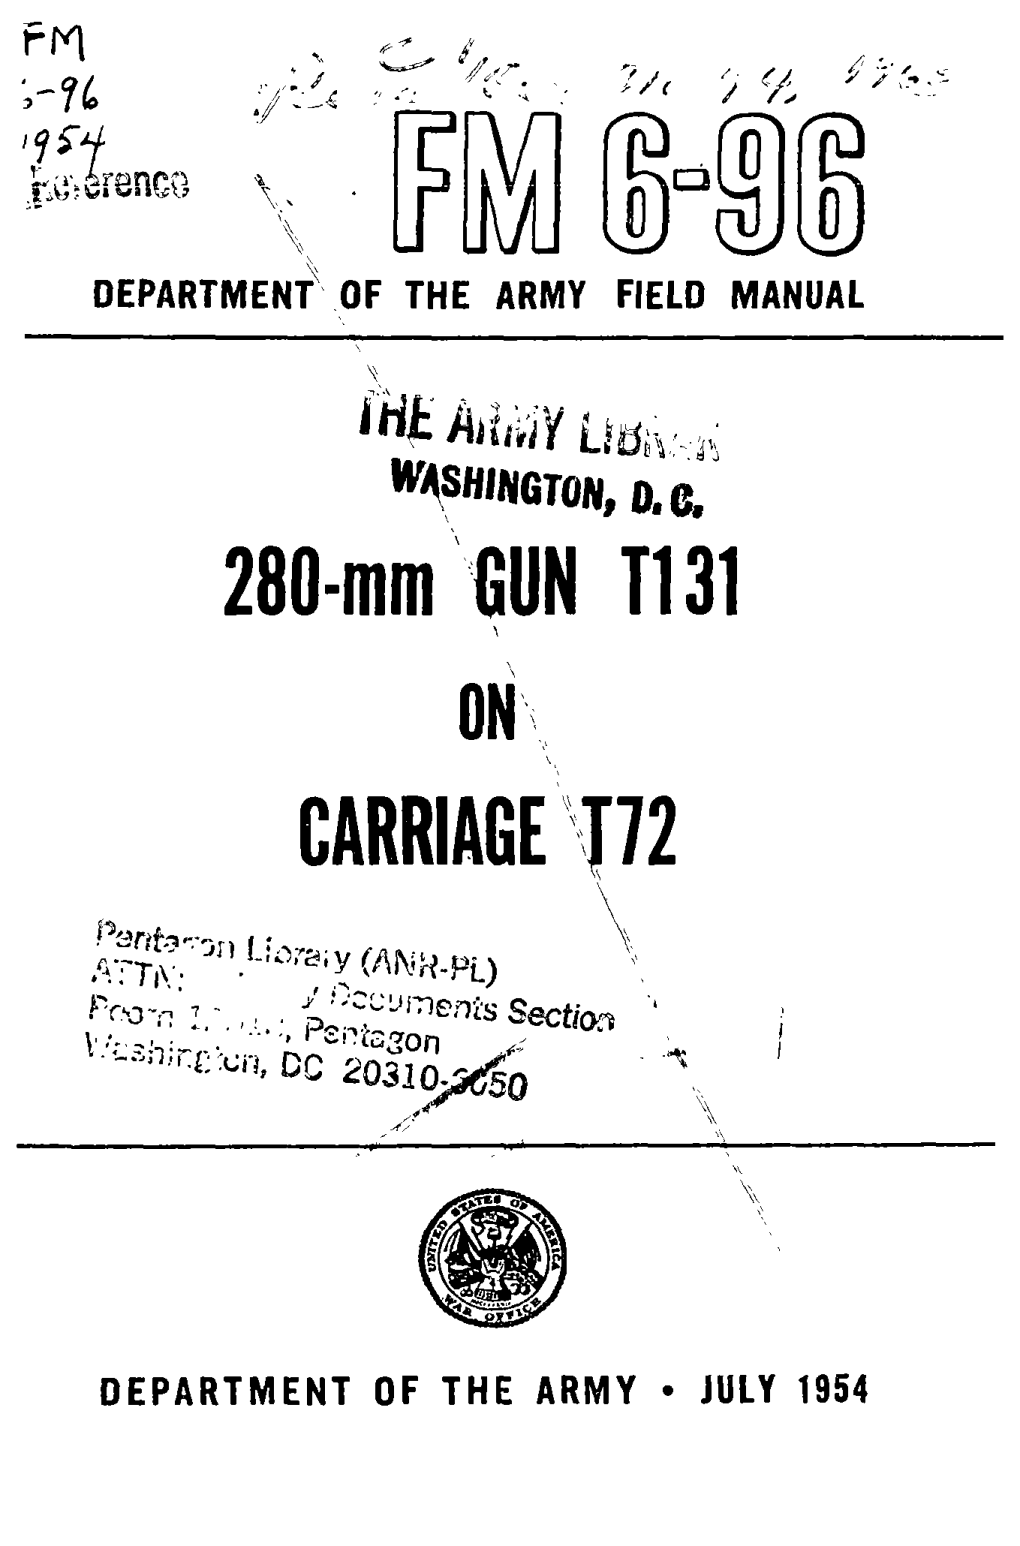 280-Mm GUN Tl 31 CARRIAGE